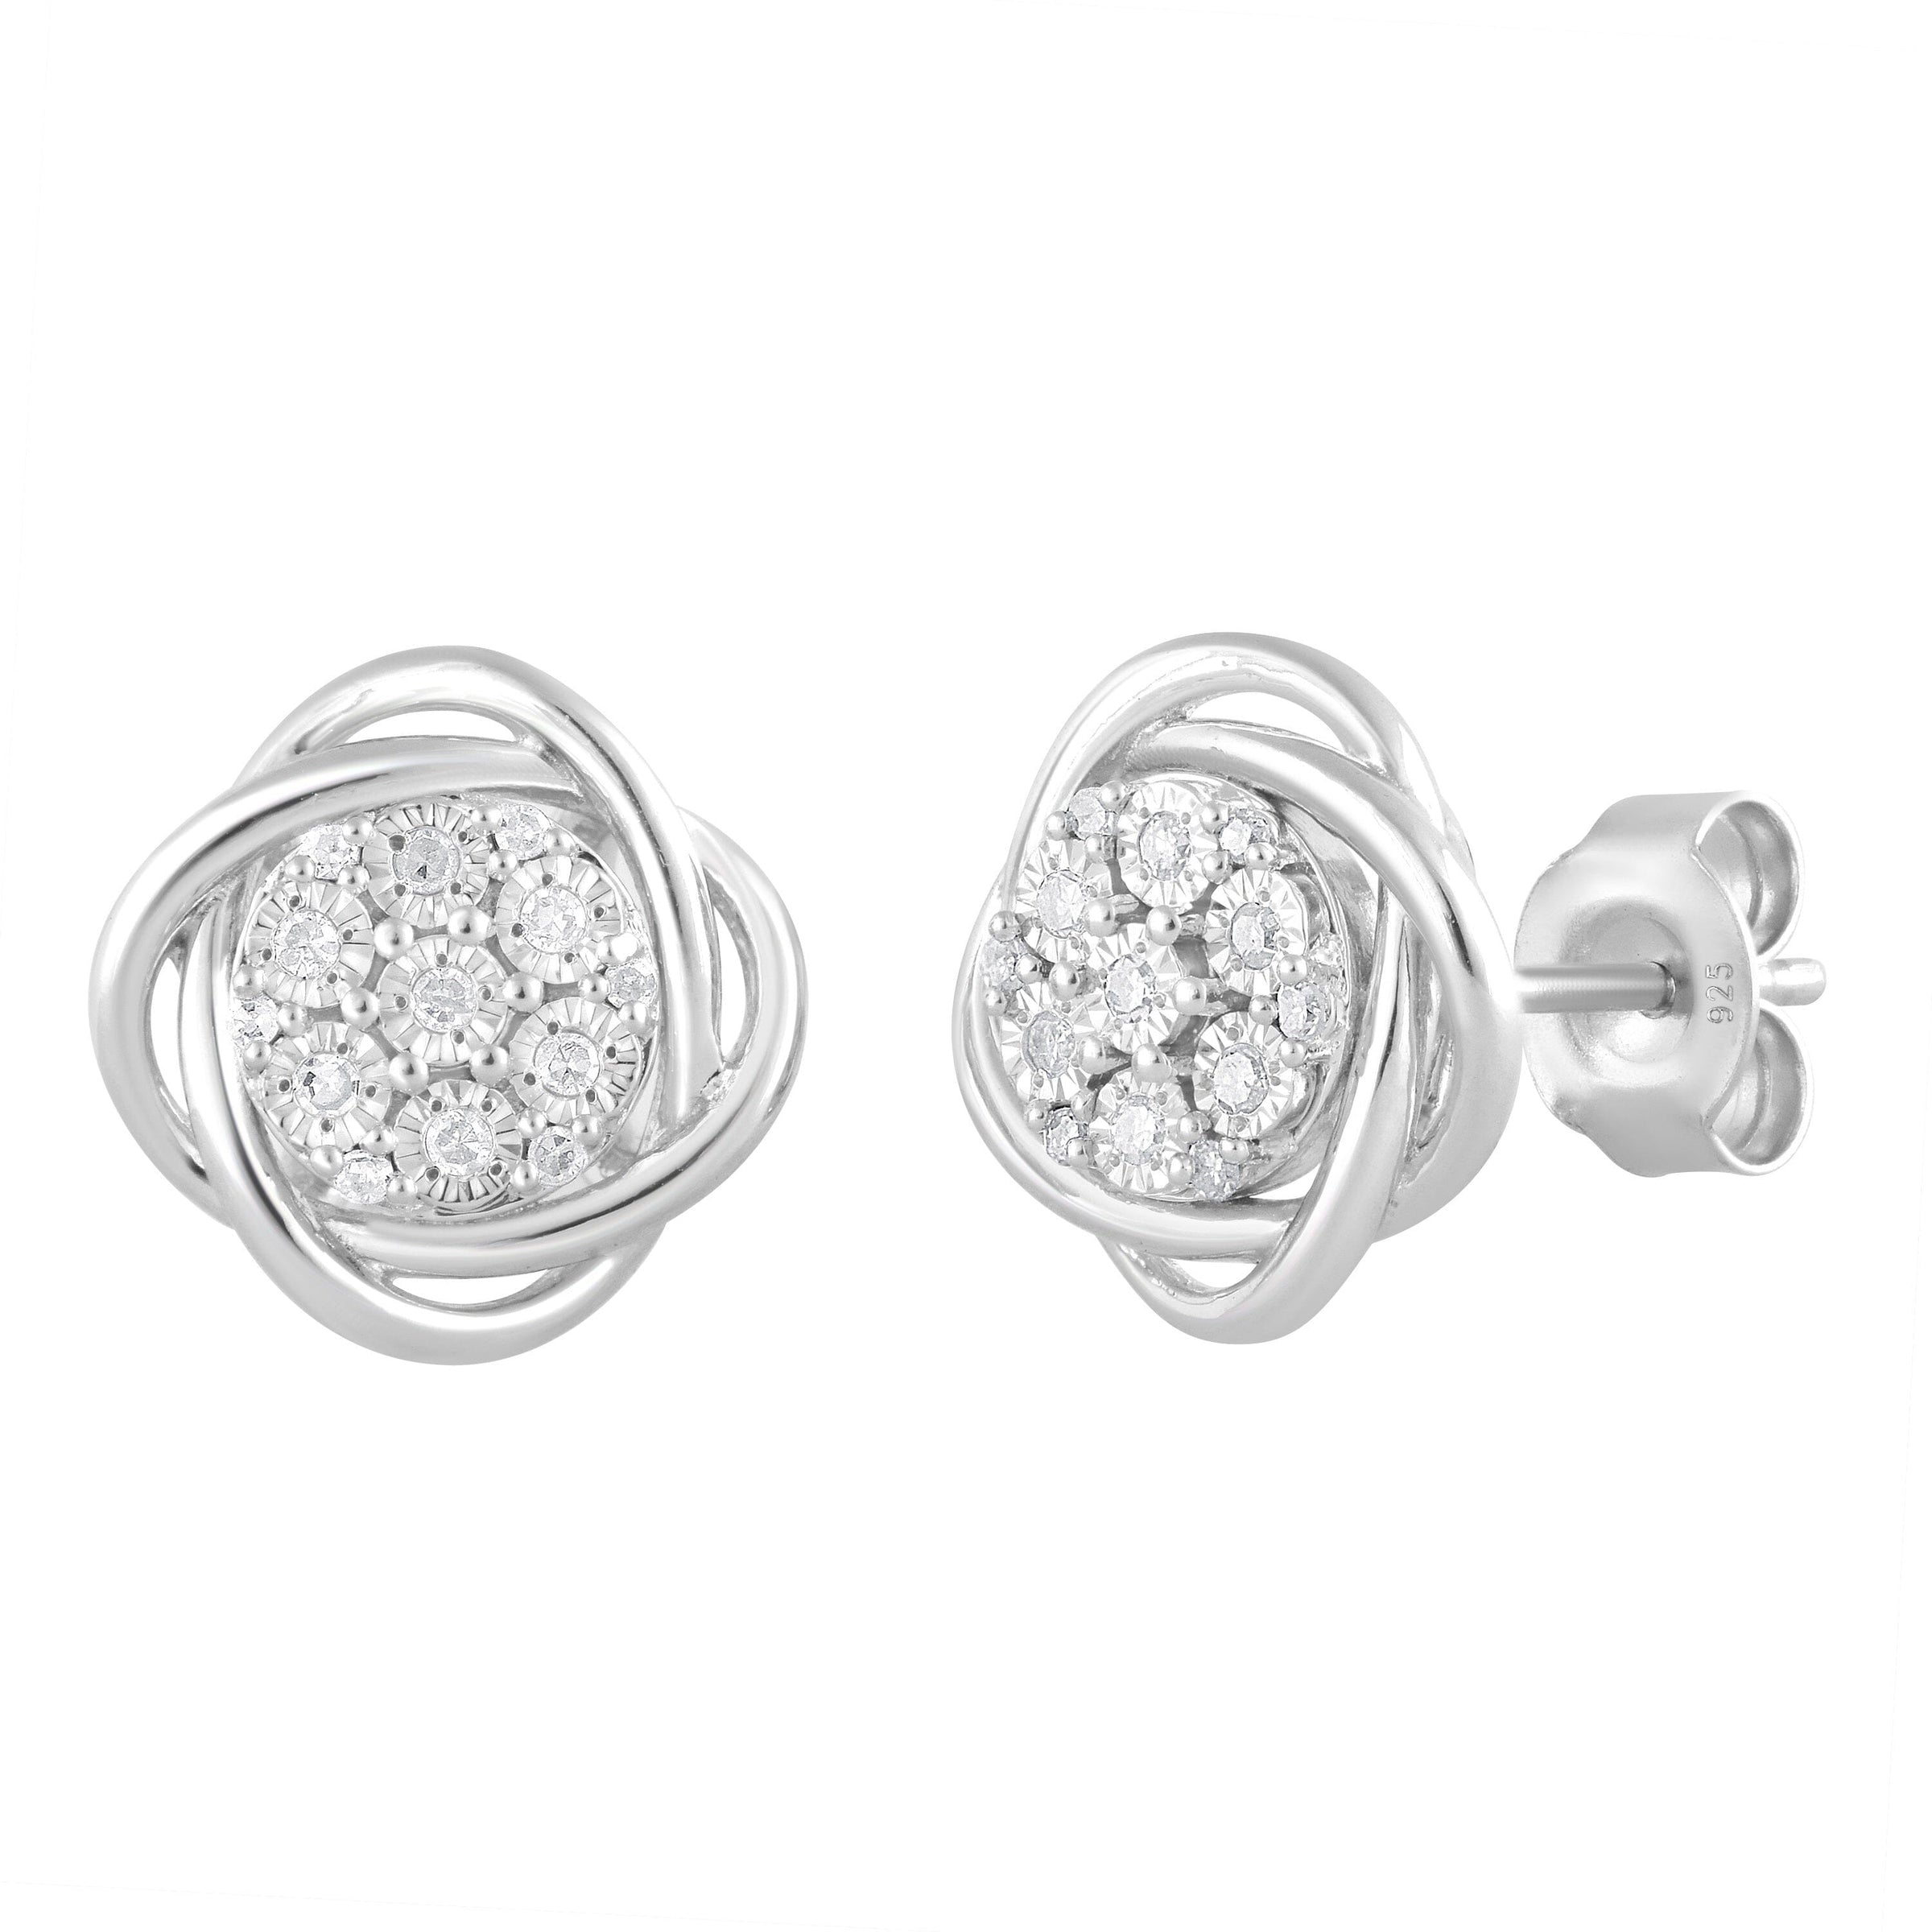 Fancy Swirl Halo Stud Earrings with 0.10ct of Diamonds in Sterling Silver Earrings Bevilles 